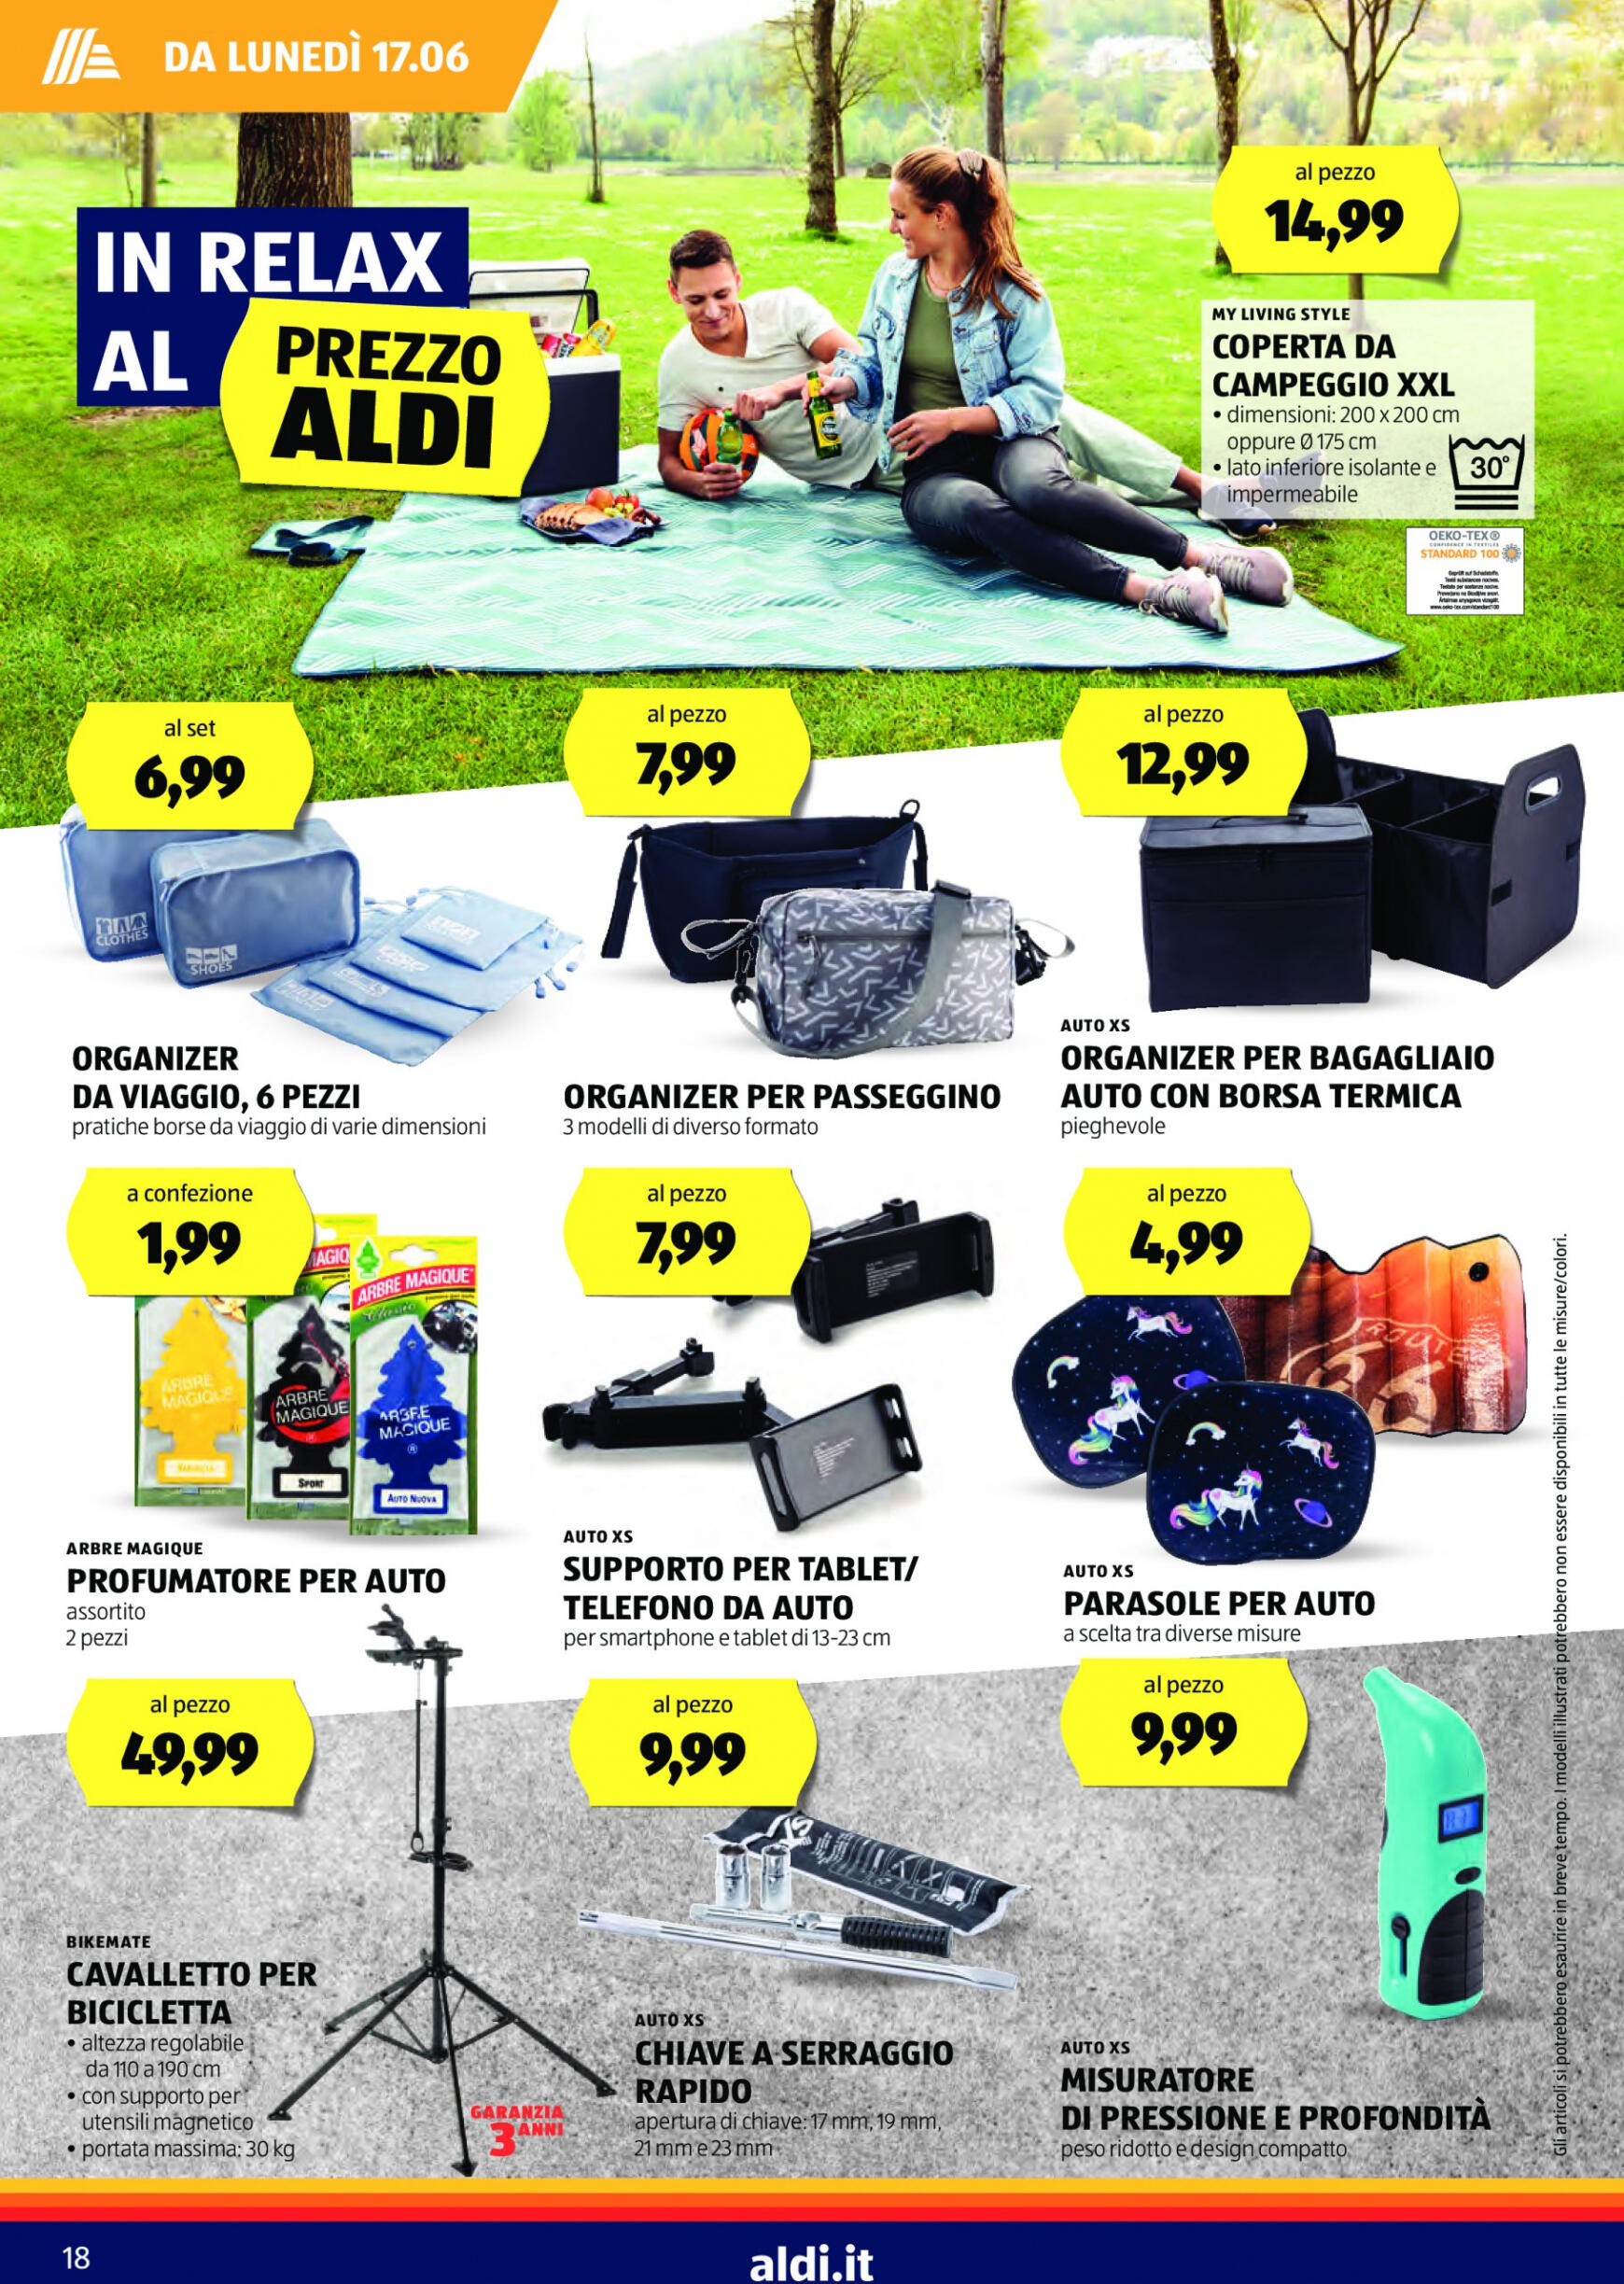 aldi - Nuovo volantino ALDI 17.06. - 23.06. - page: 18